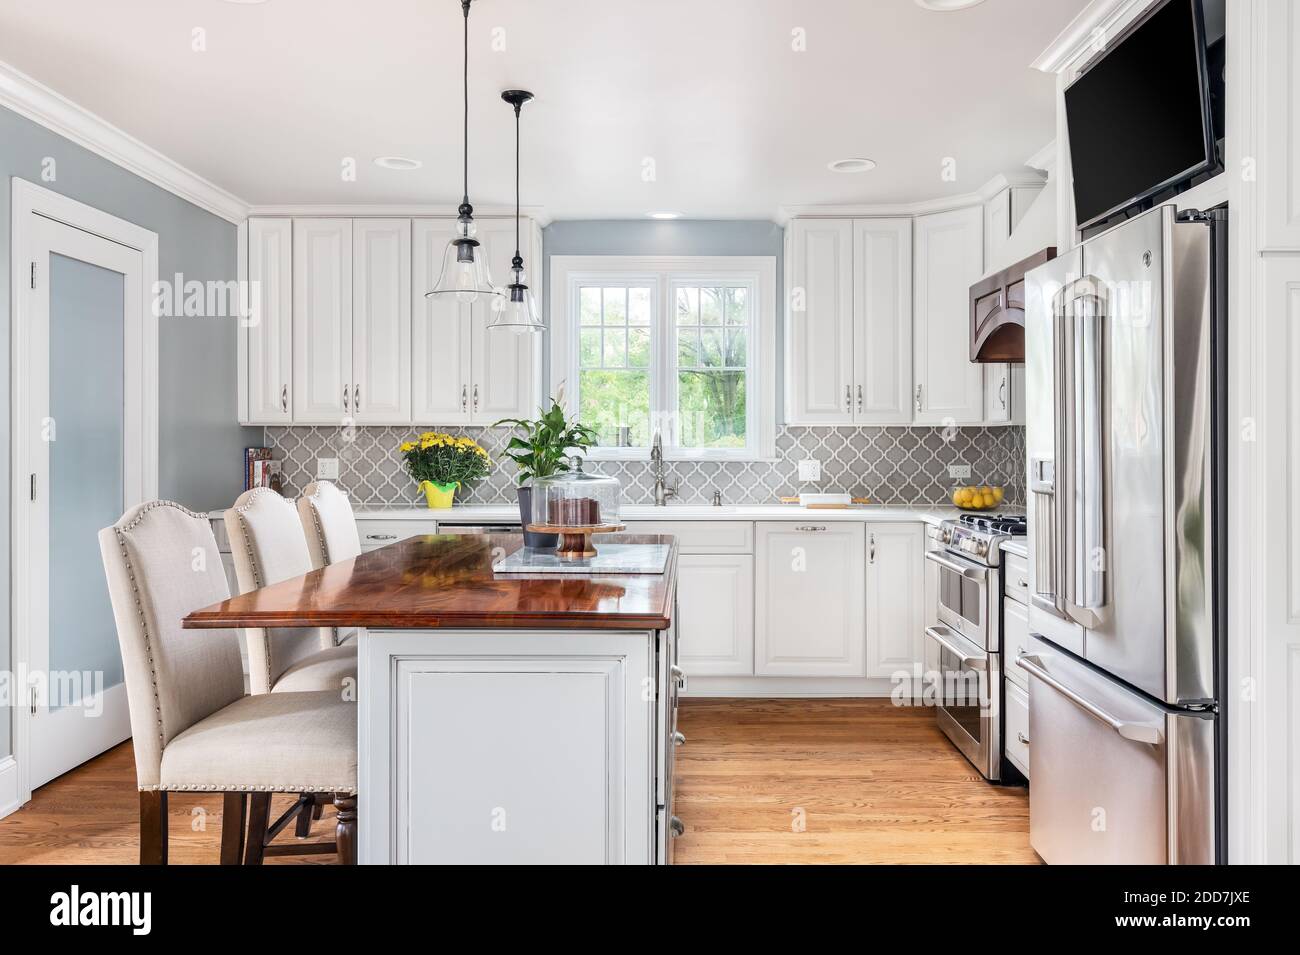 Eine neu renovierte Küche mit GE-Geräten aus Edelstahl, weißen und grauen Schränken und einem Fernseher über dem Kühlschrank. Stockfoto